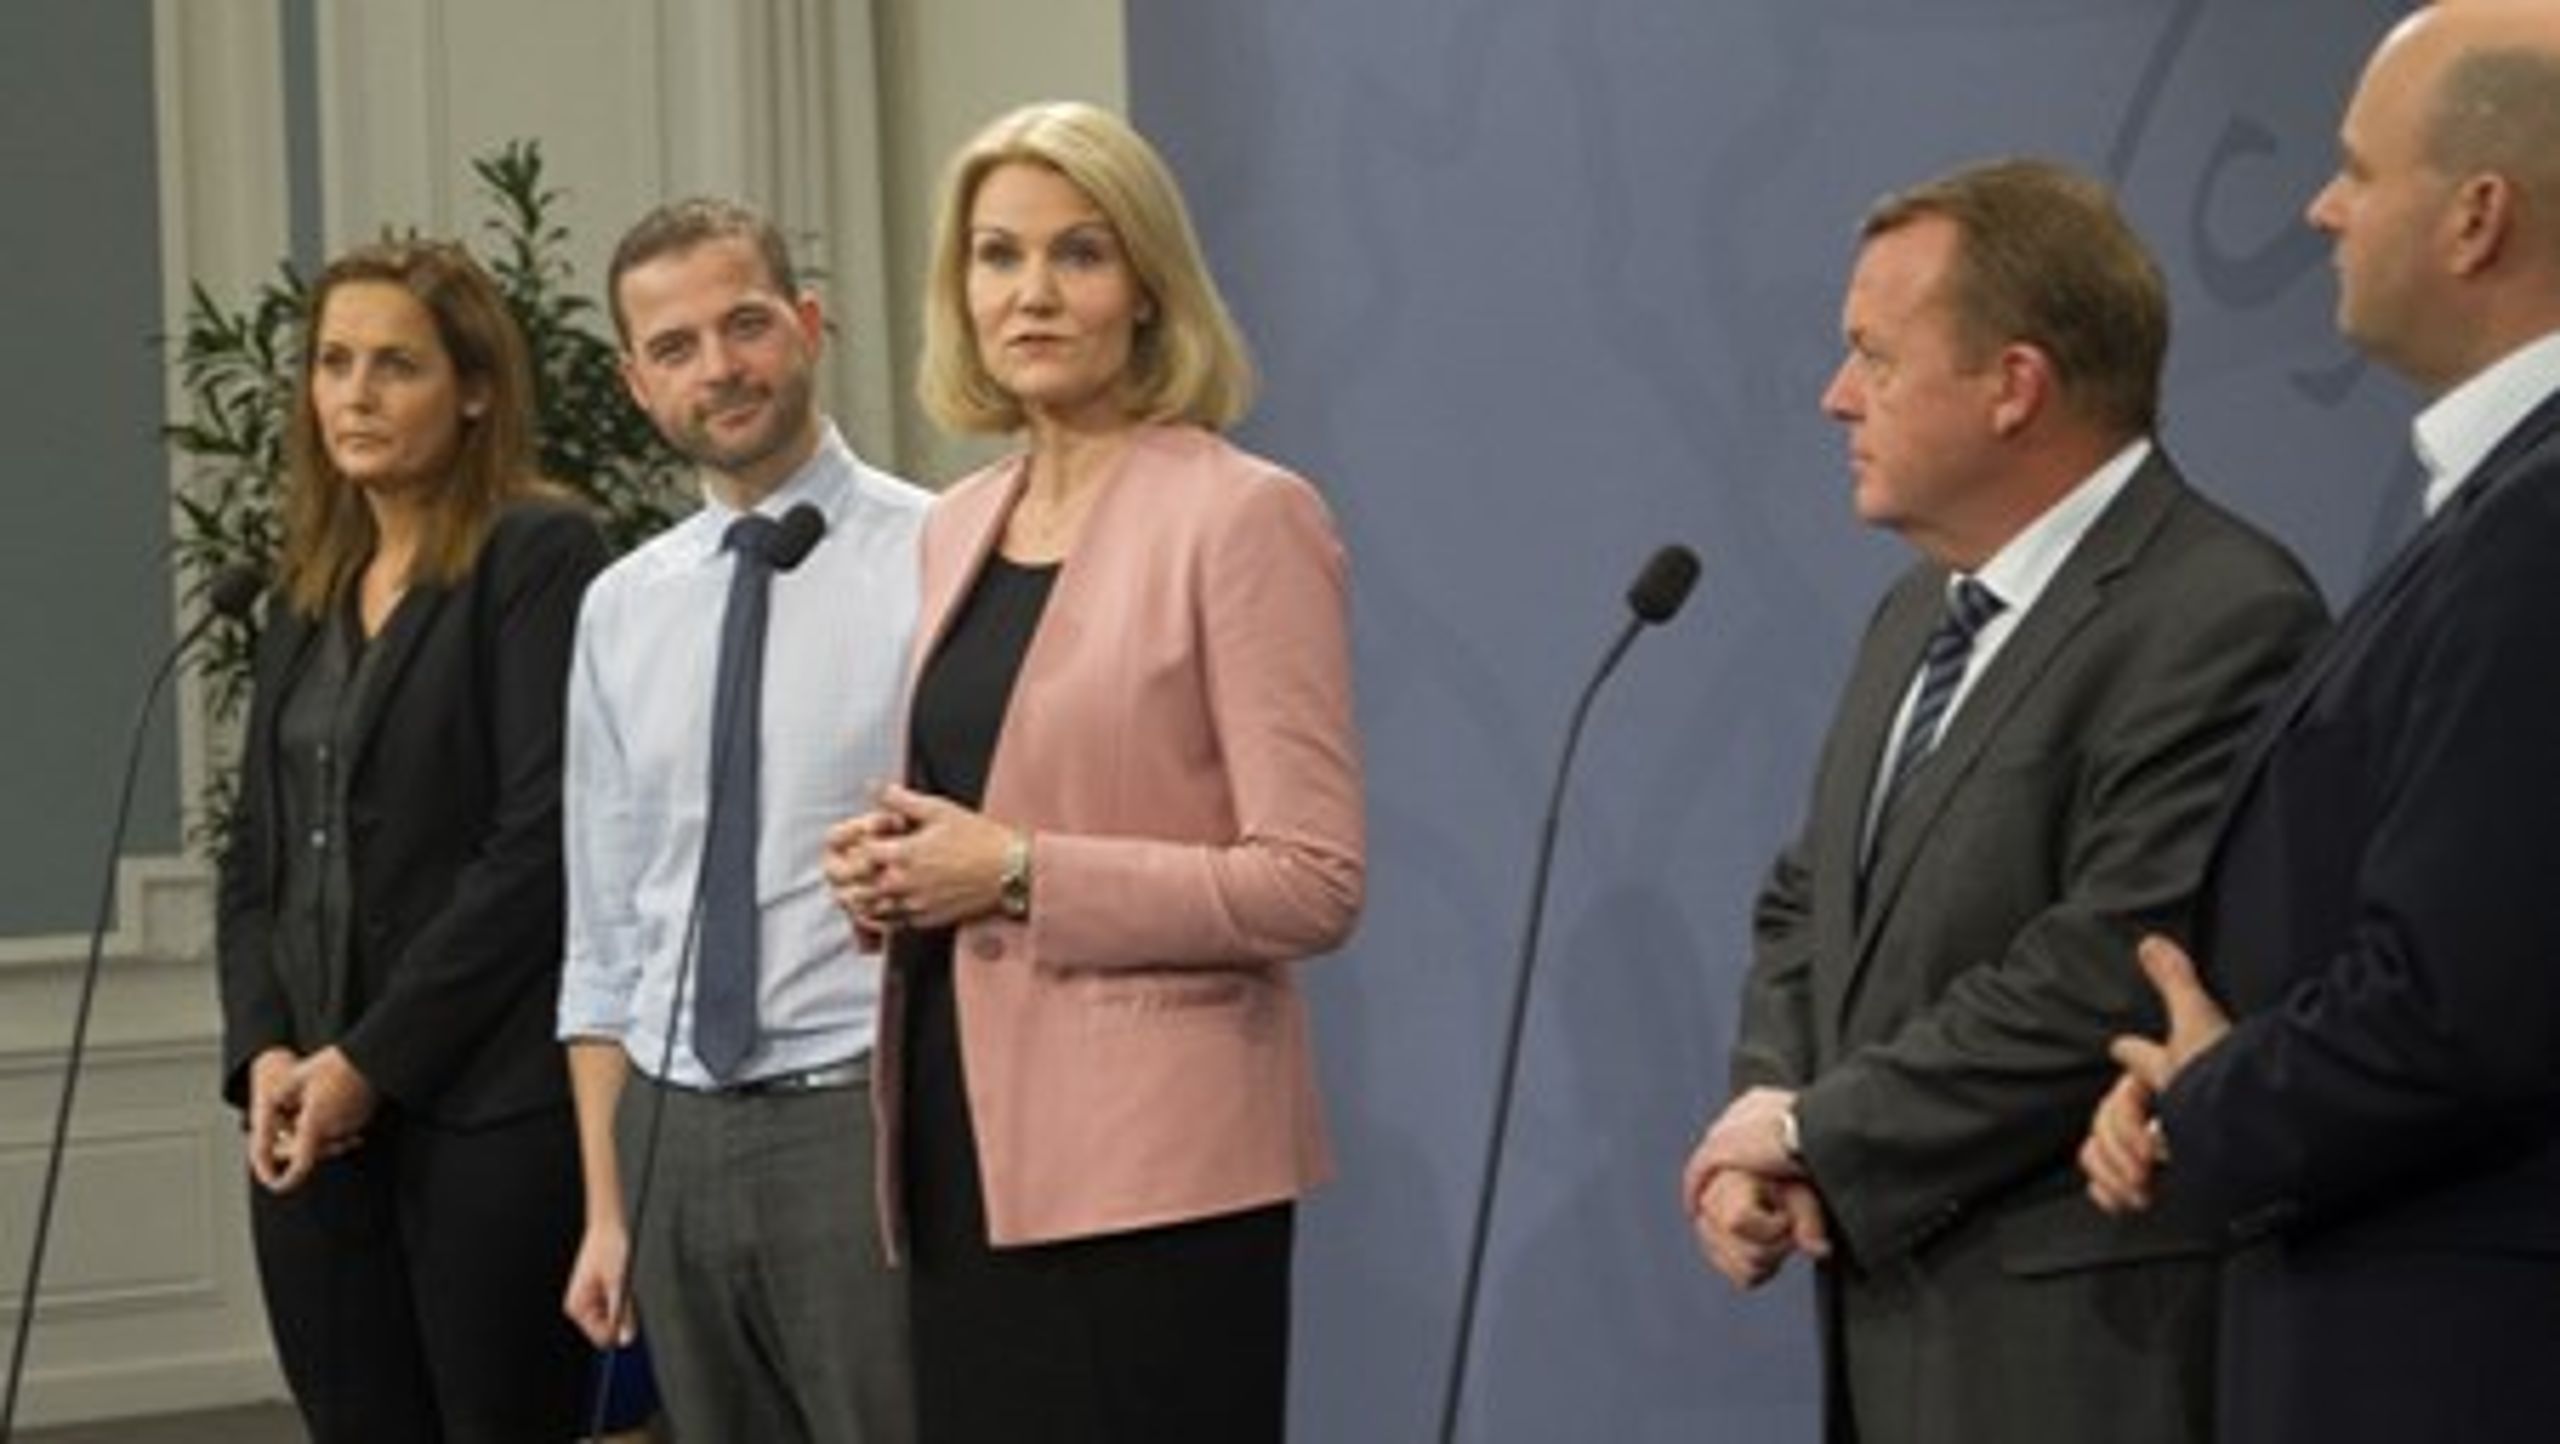 Mens fem ud af otte partiledere på Christiansborg støtter en ændring af retsforbeholdet, er vælgerne langt fra lige så afklarede, viser ny måling.